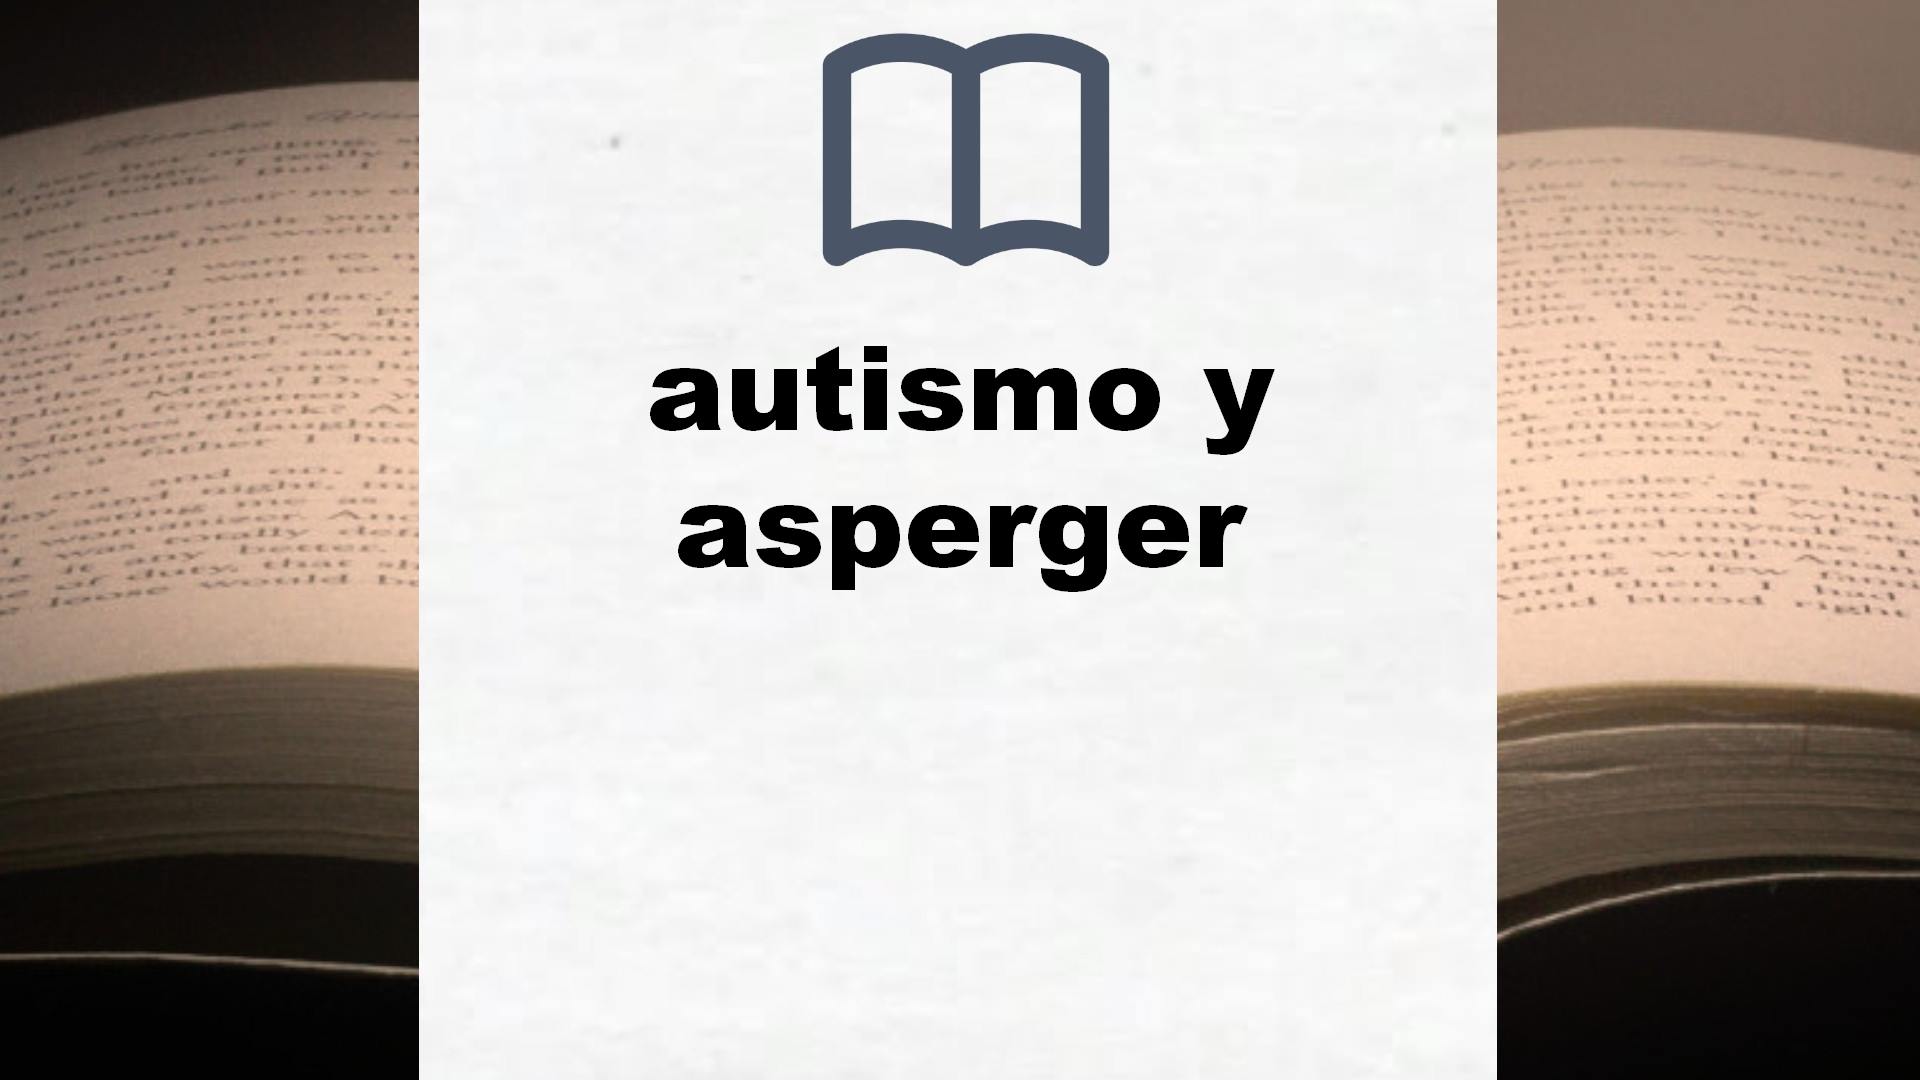 Libros sobre autismo y asperger